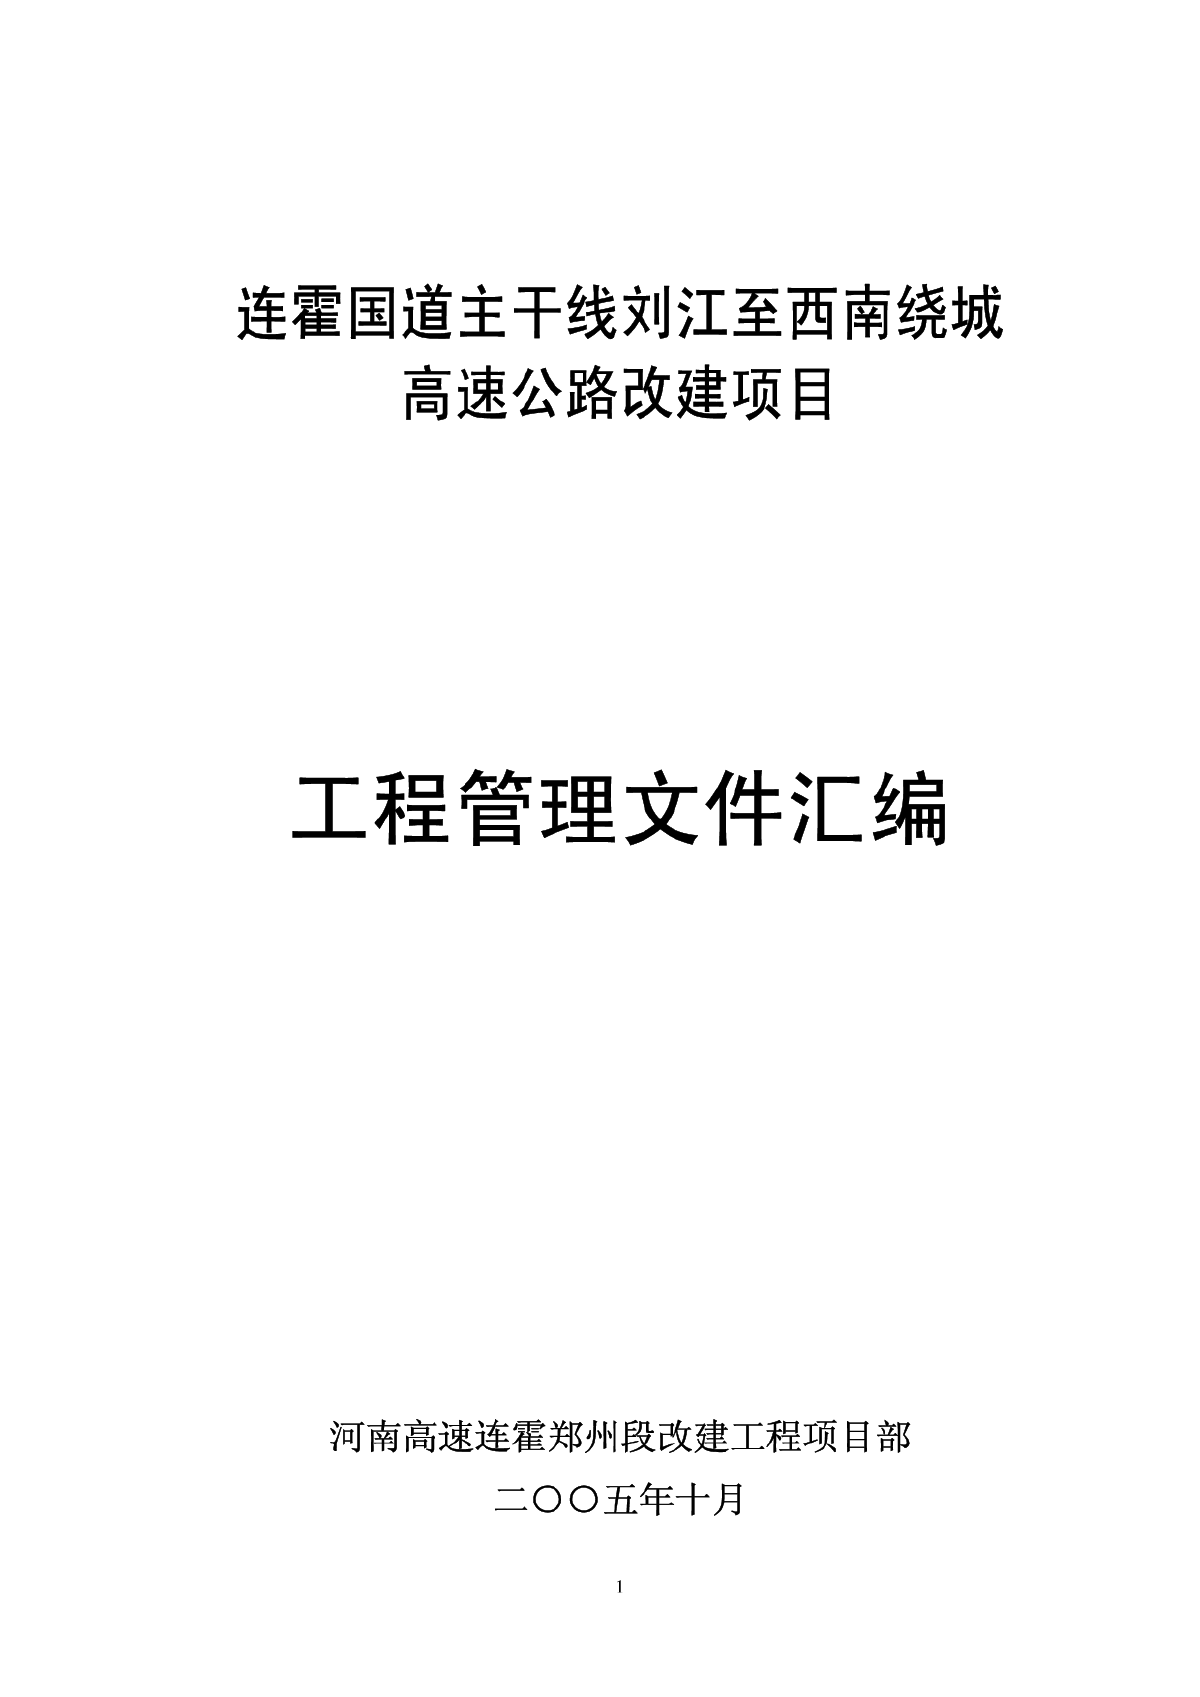 连霍国道主干线刘江至西南绕城高速公路改建项目工程管理文件汇编-图一